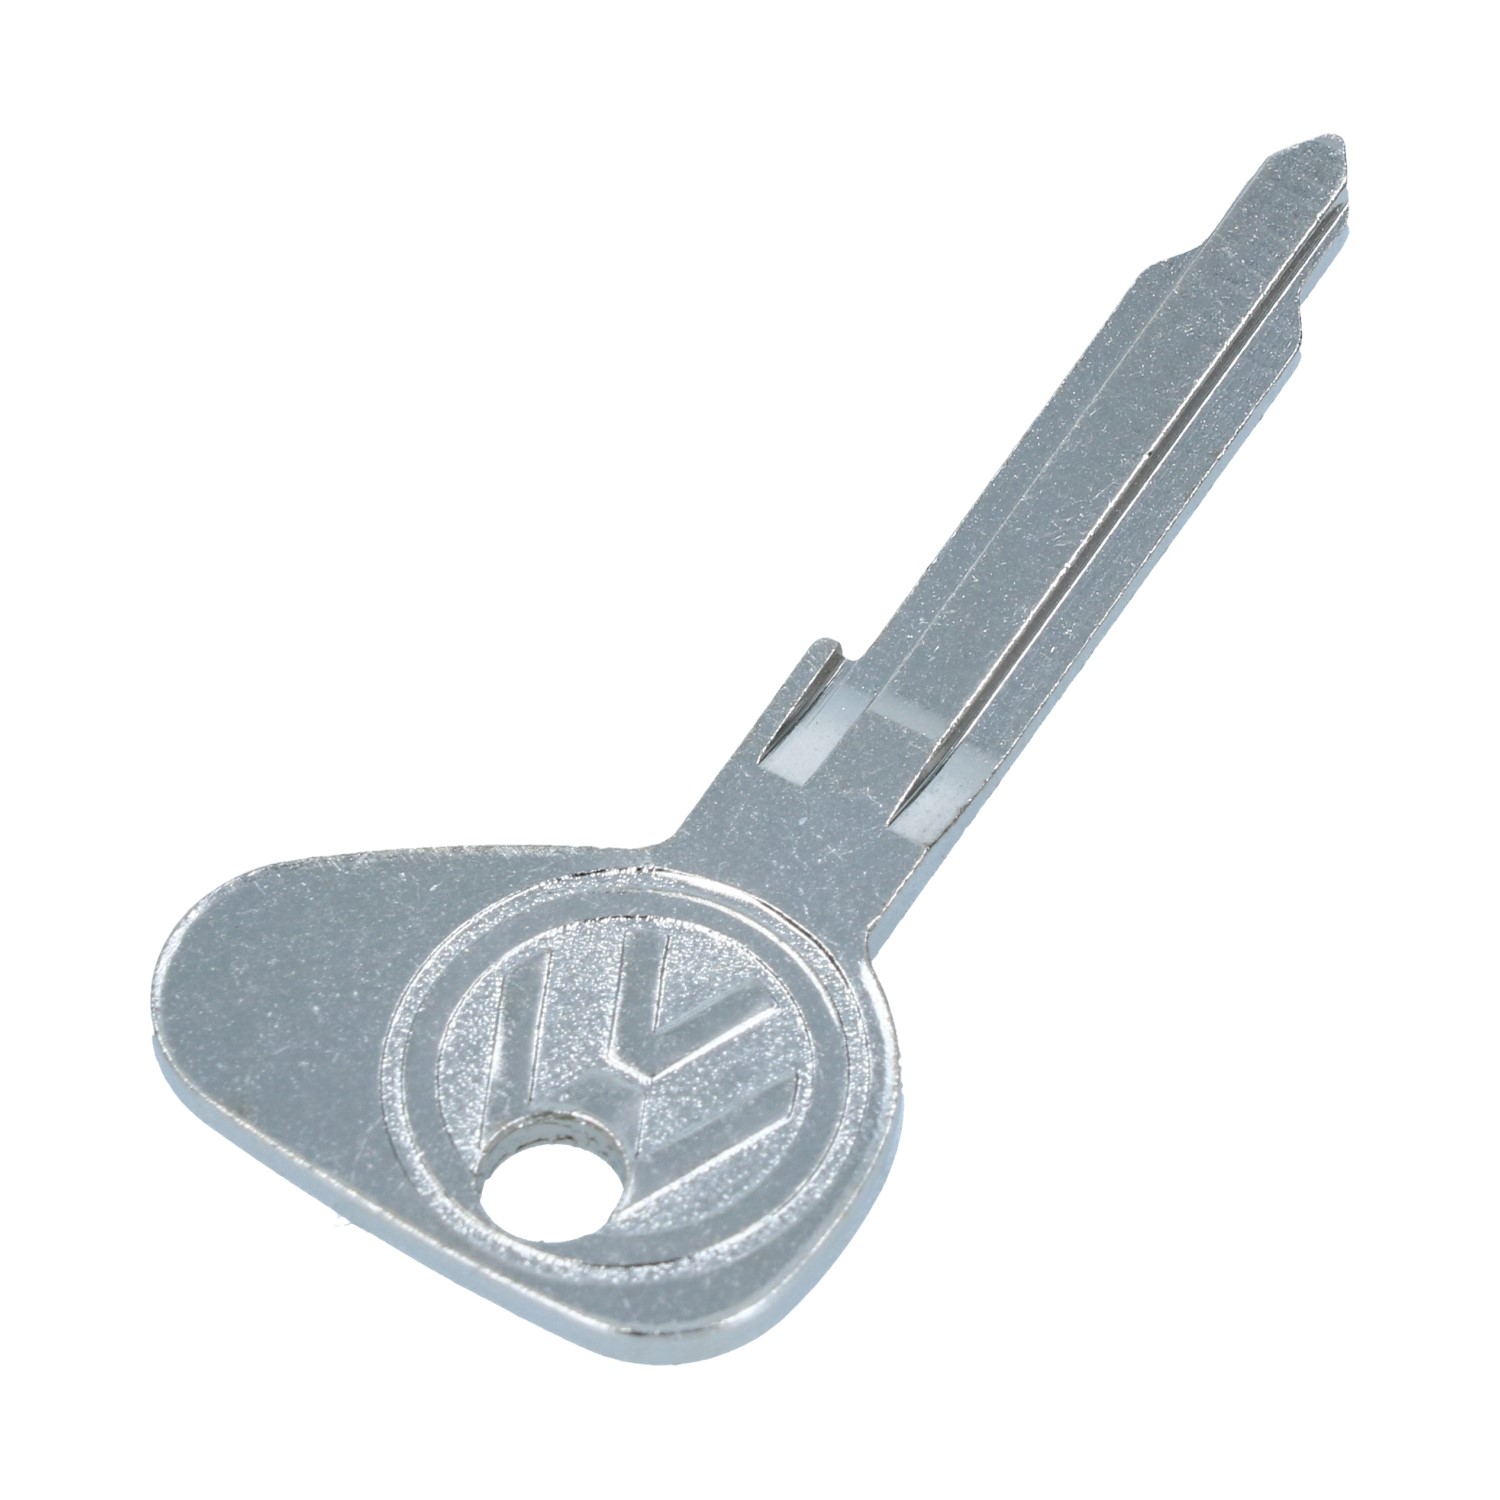 Schlüssel Rohling 'K' - Käfer - KG - Typ 3 - 111 837 219A